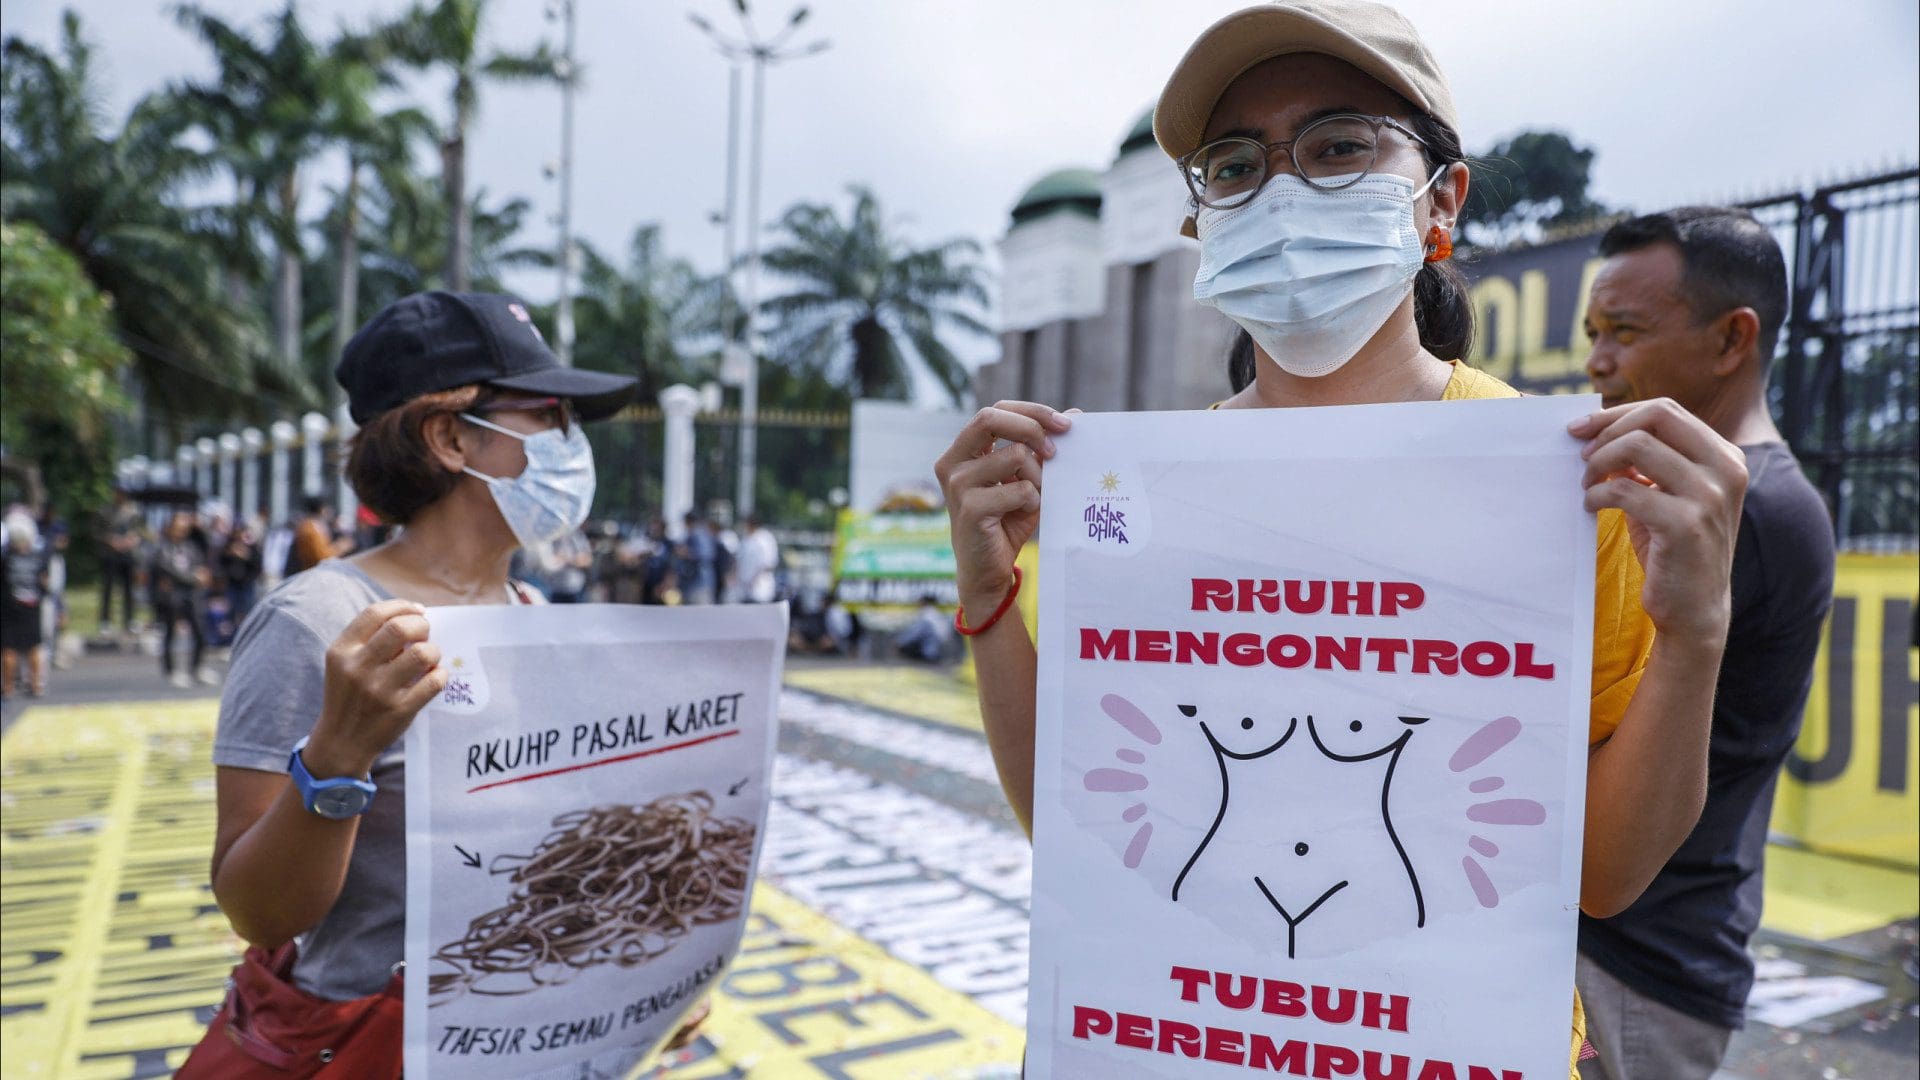 Indonésia aprova lei que pune com pena de prisão sexo fora do casamento